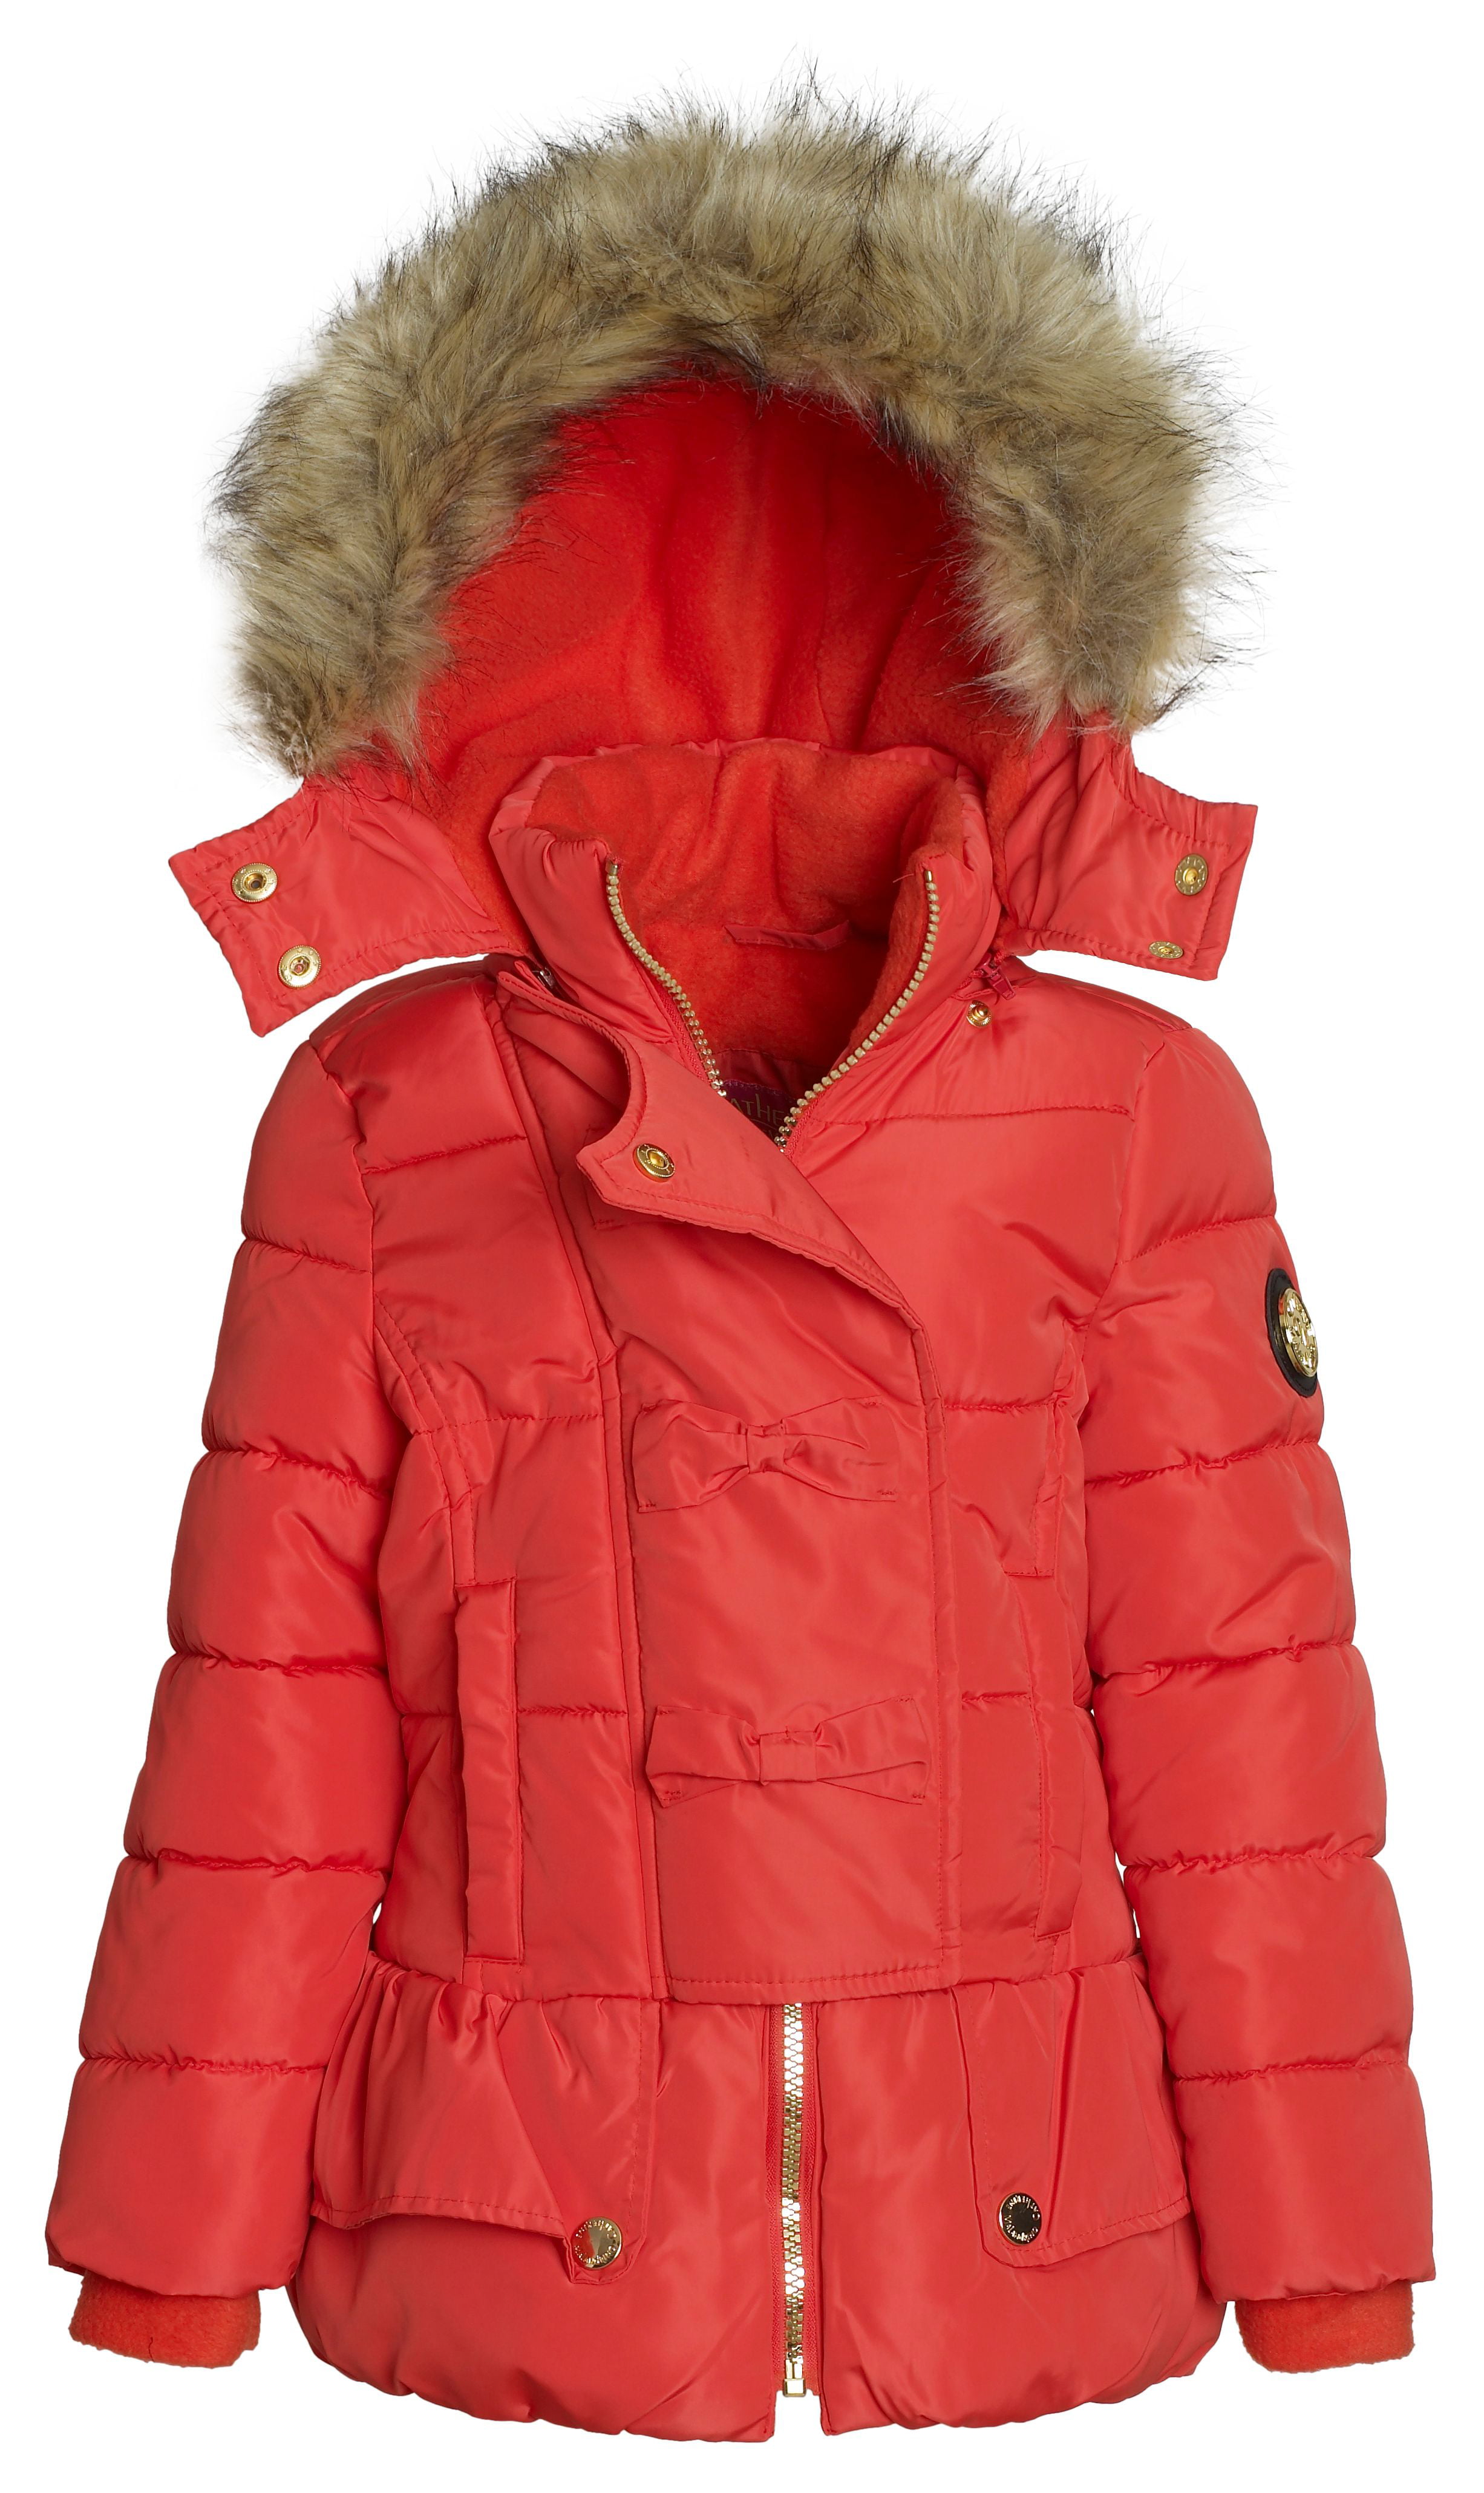 Sportoli - Sportoli Kids Girls' Fleece Lined Hooded Puffer Coat Fashion ...